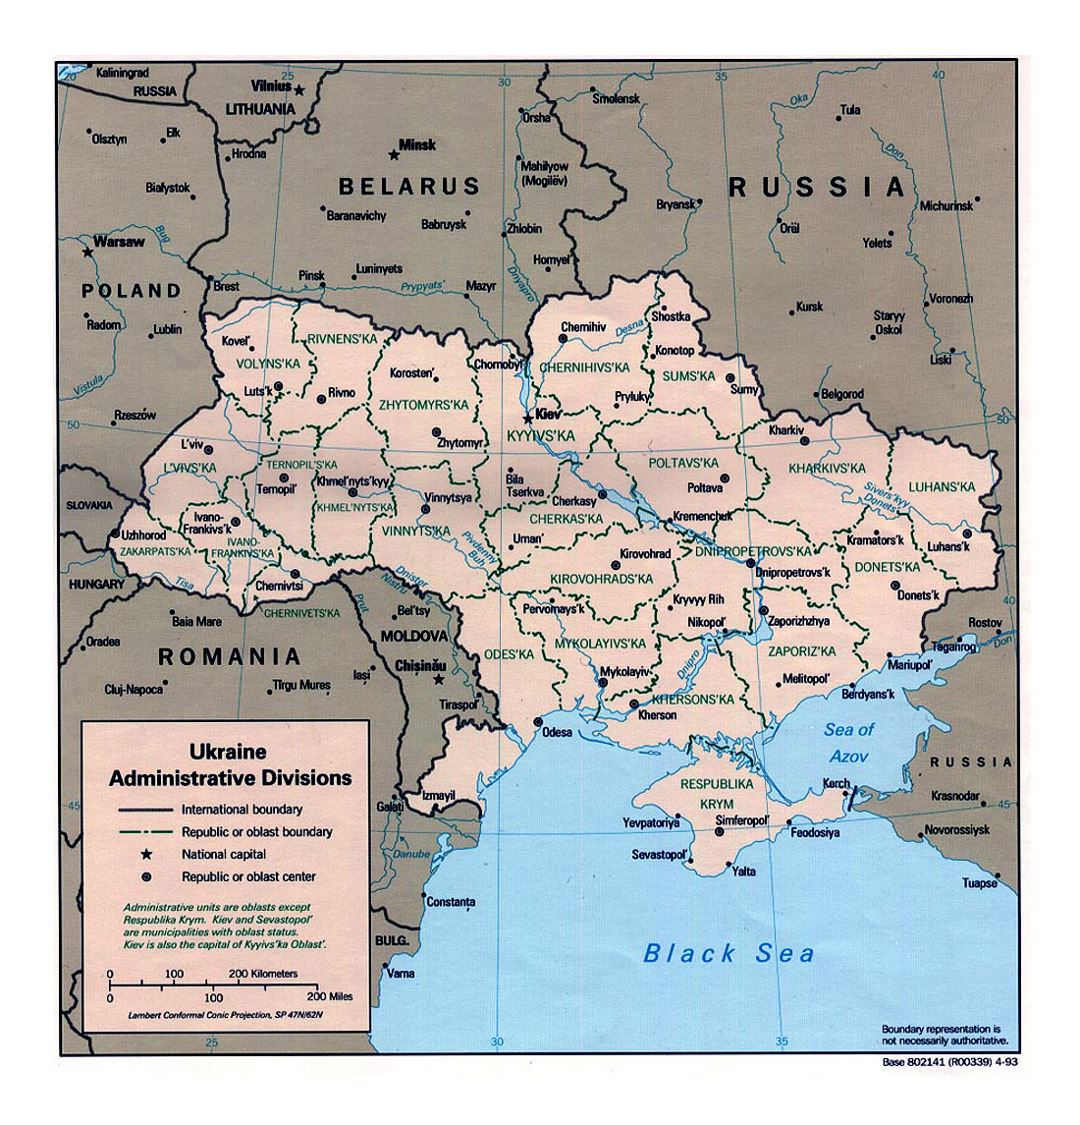 Detallado mapa de administrativas divisiones de Ucrania - 1993